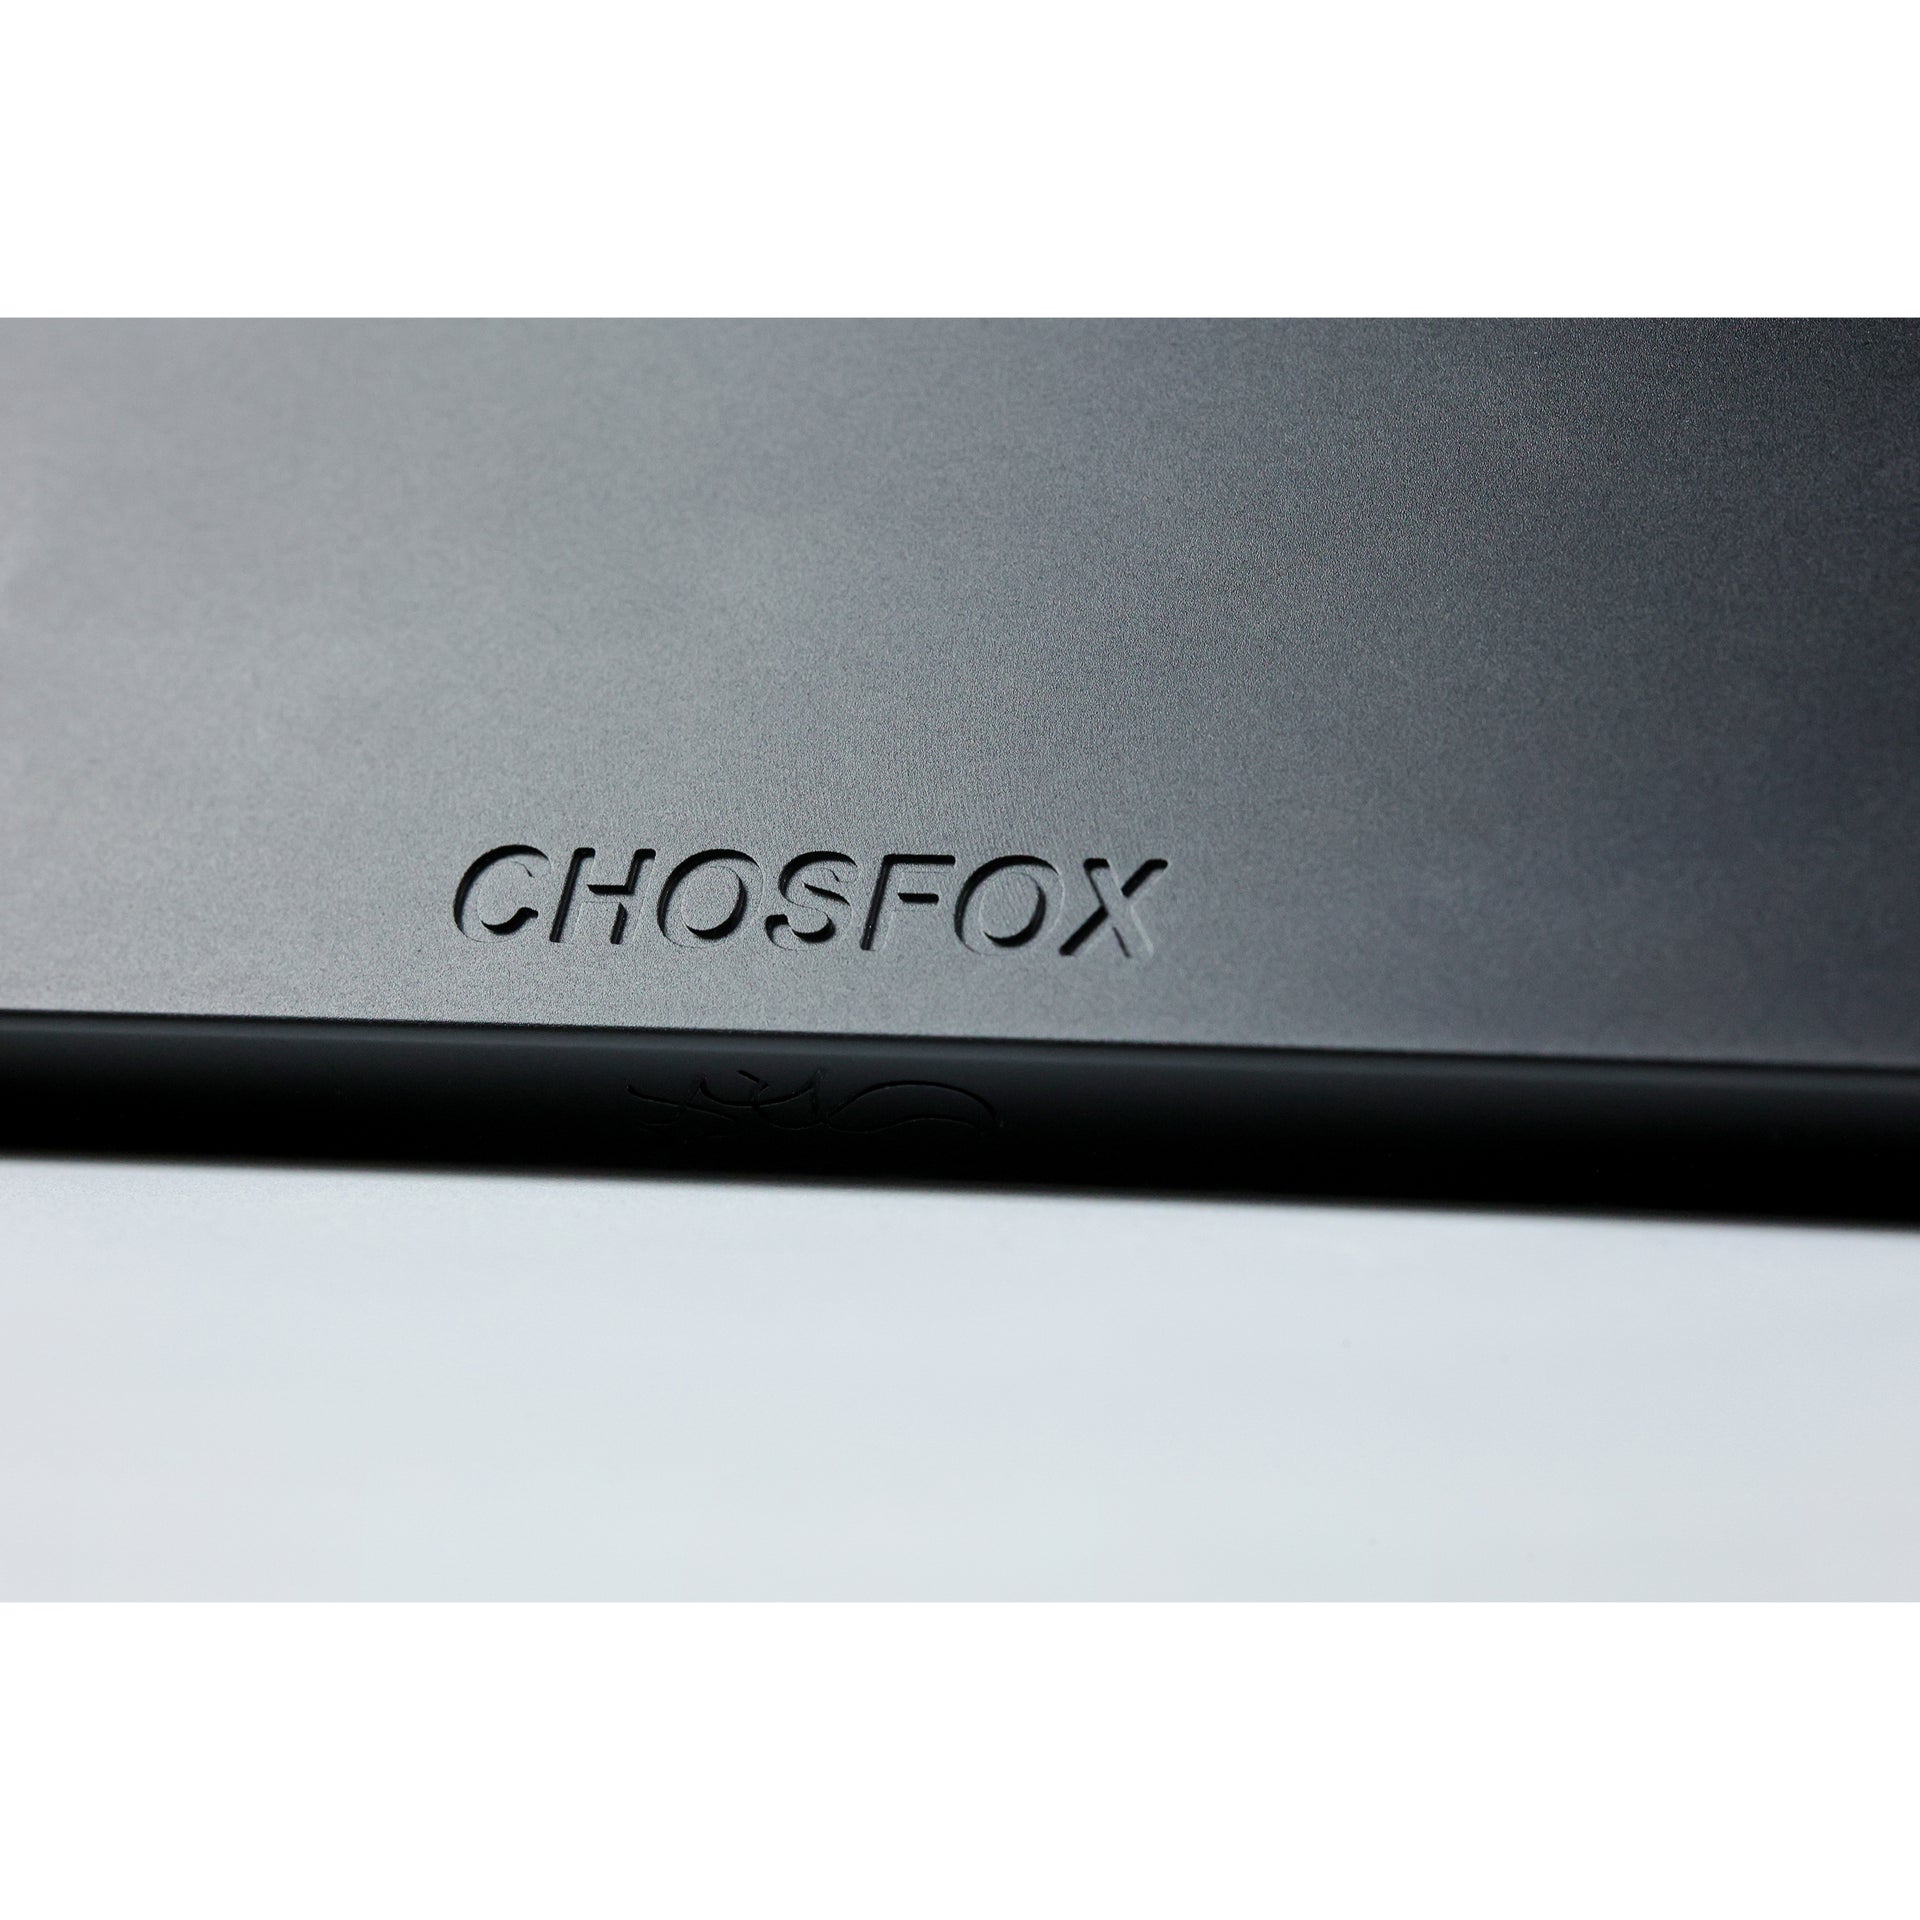 [GB] Chosfox x Sporewoh | bancouver40 Keyboard Kit-Chosfox